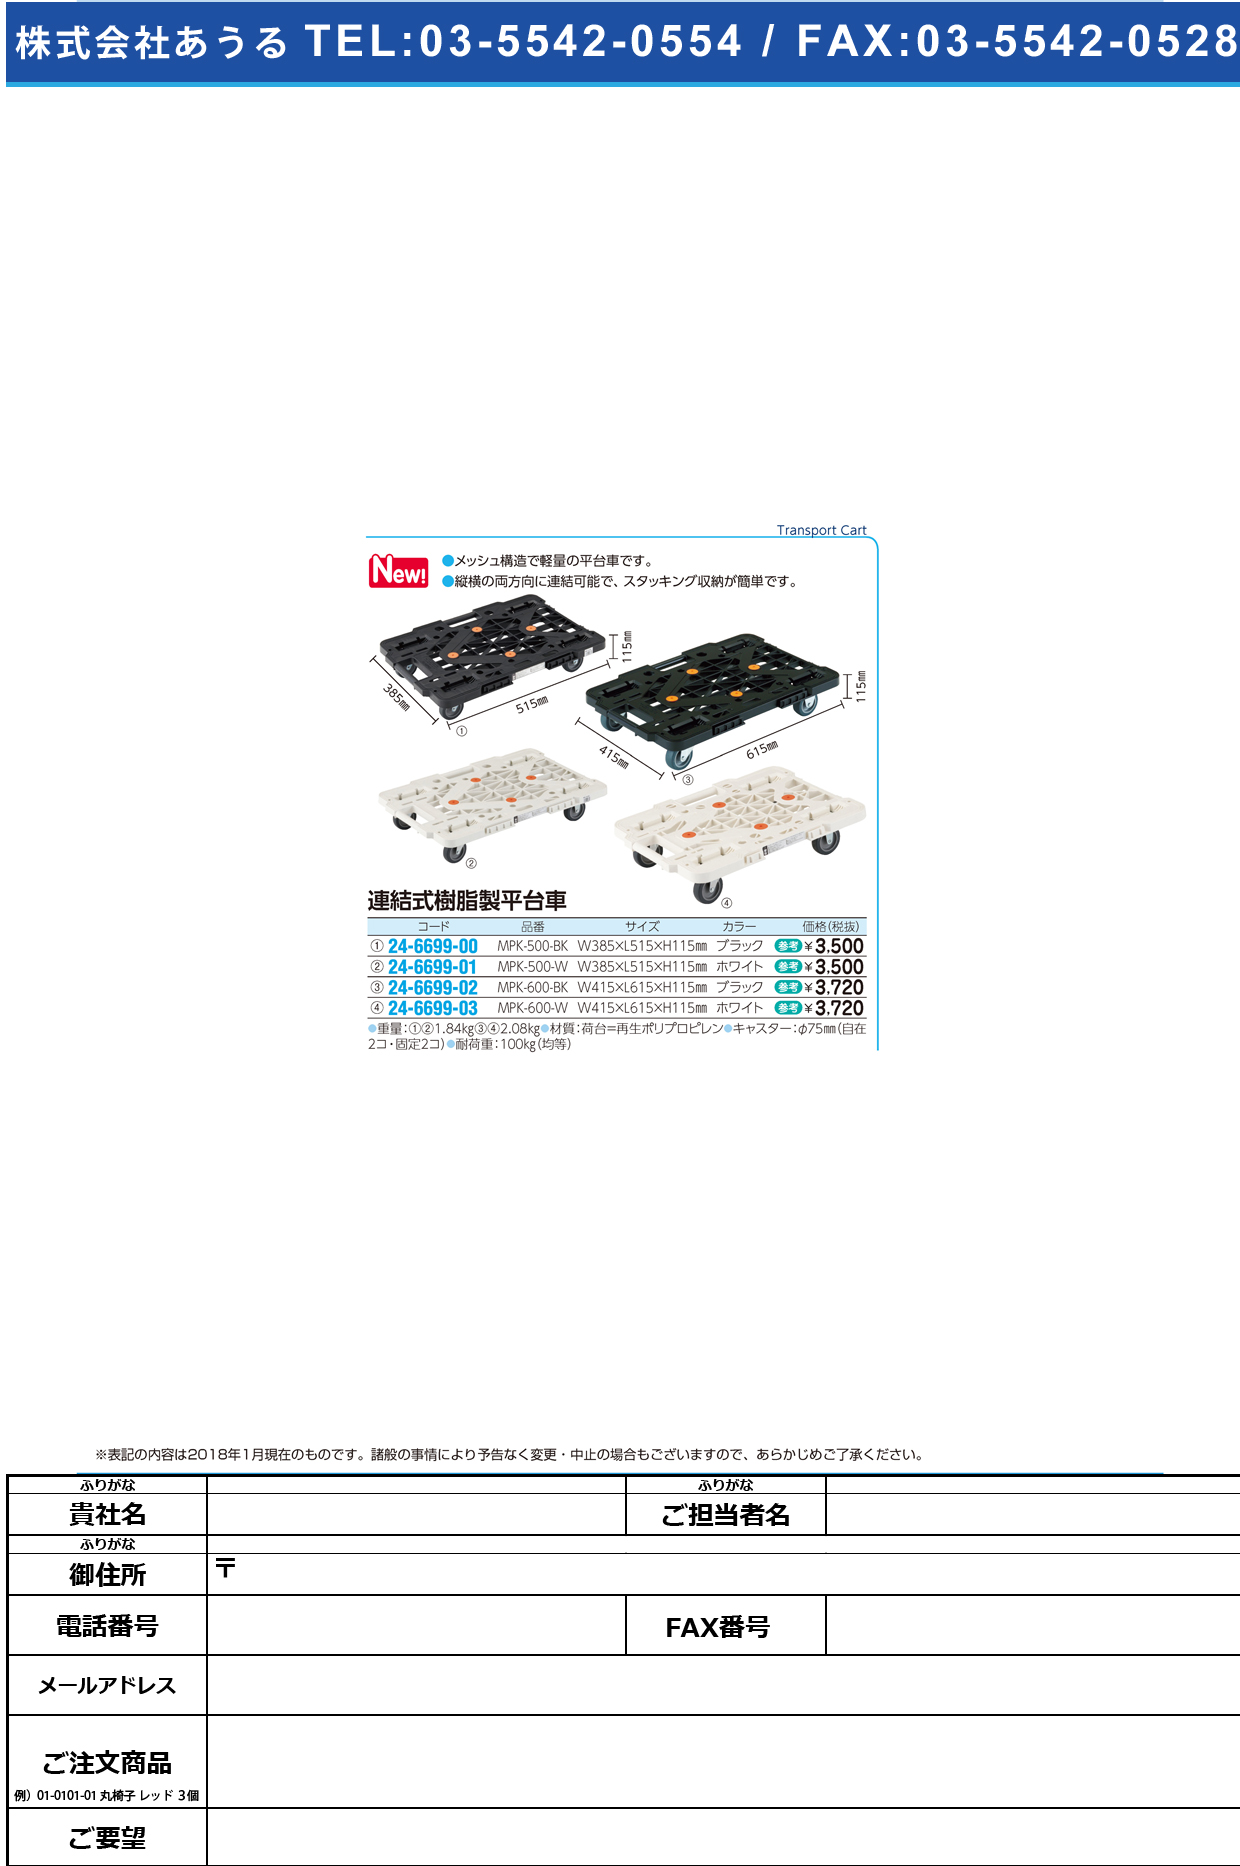 (24-6699-03)連結式樹脂製平台車 MPK-600-W(ﾎﾜｲﾄ) ﾚﾝｹﾂｼﾞｭｼｾｲﾋﾗﾀﾞｲｼｬ【1台単位】【2018年カタログ商品】